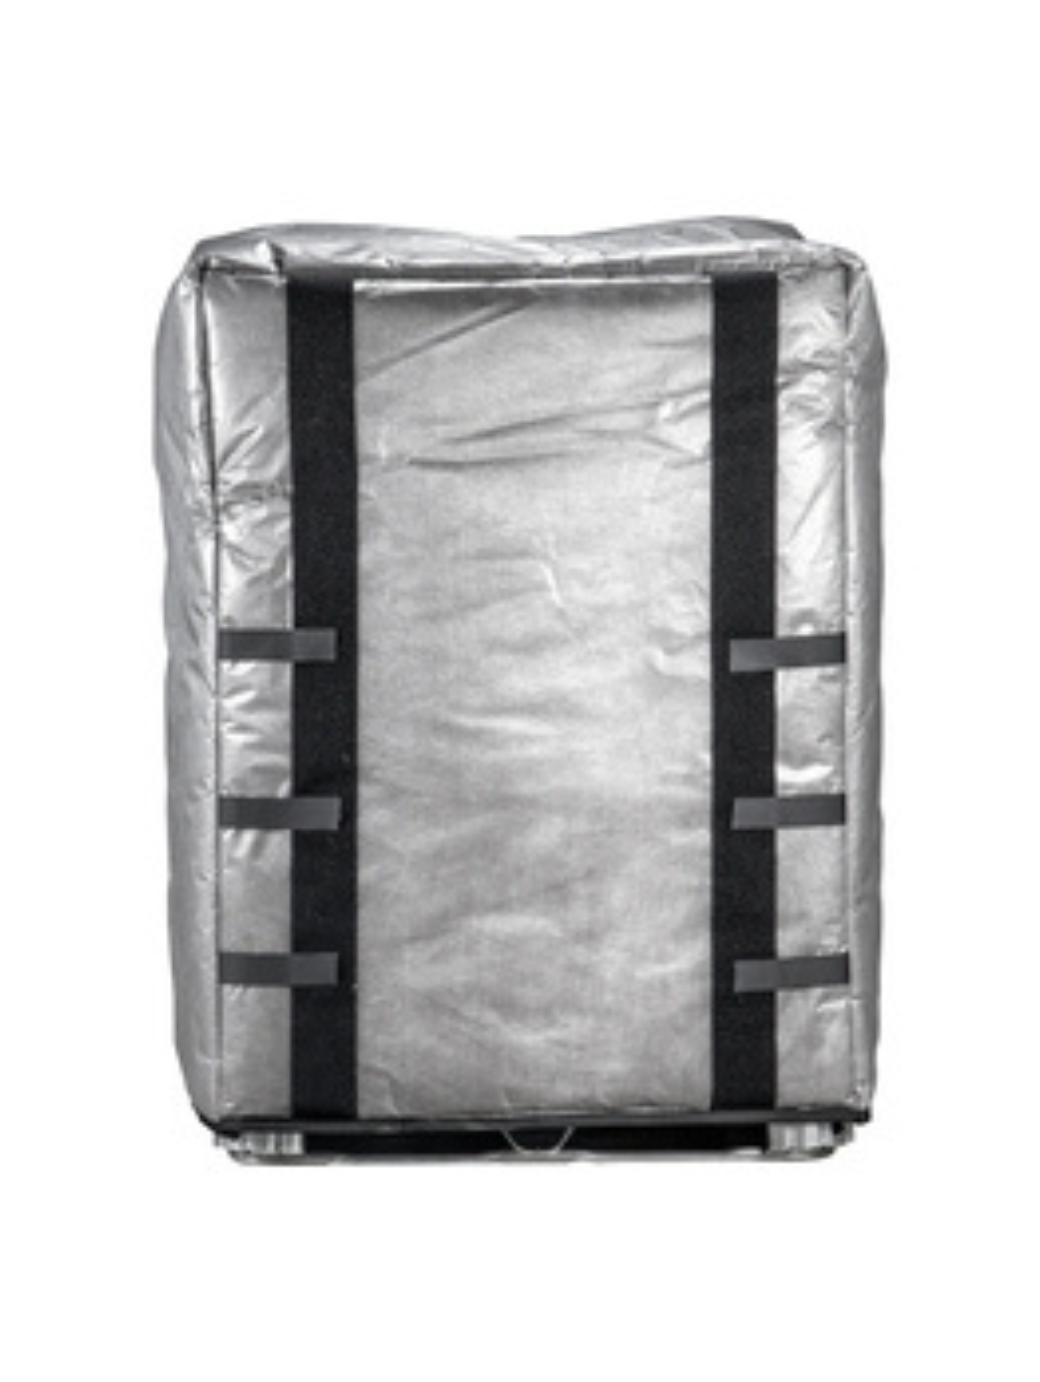 275 Gallon IBC Tote Insulated Cover w/Adjustable Straps – Luxurbay